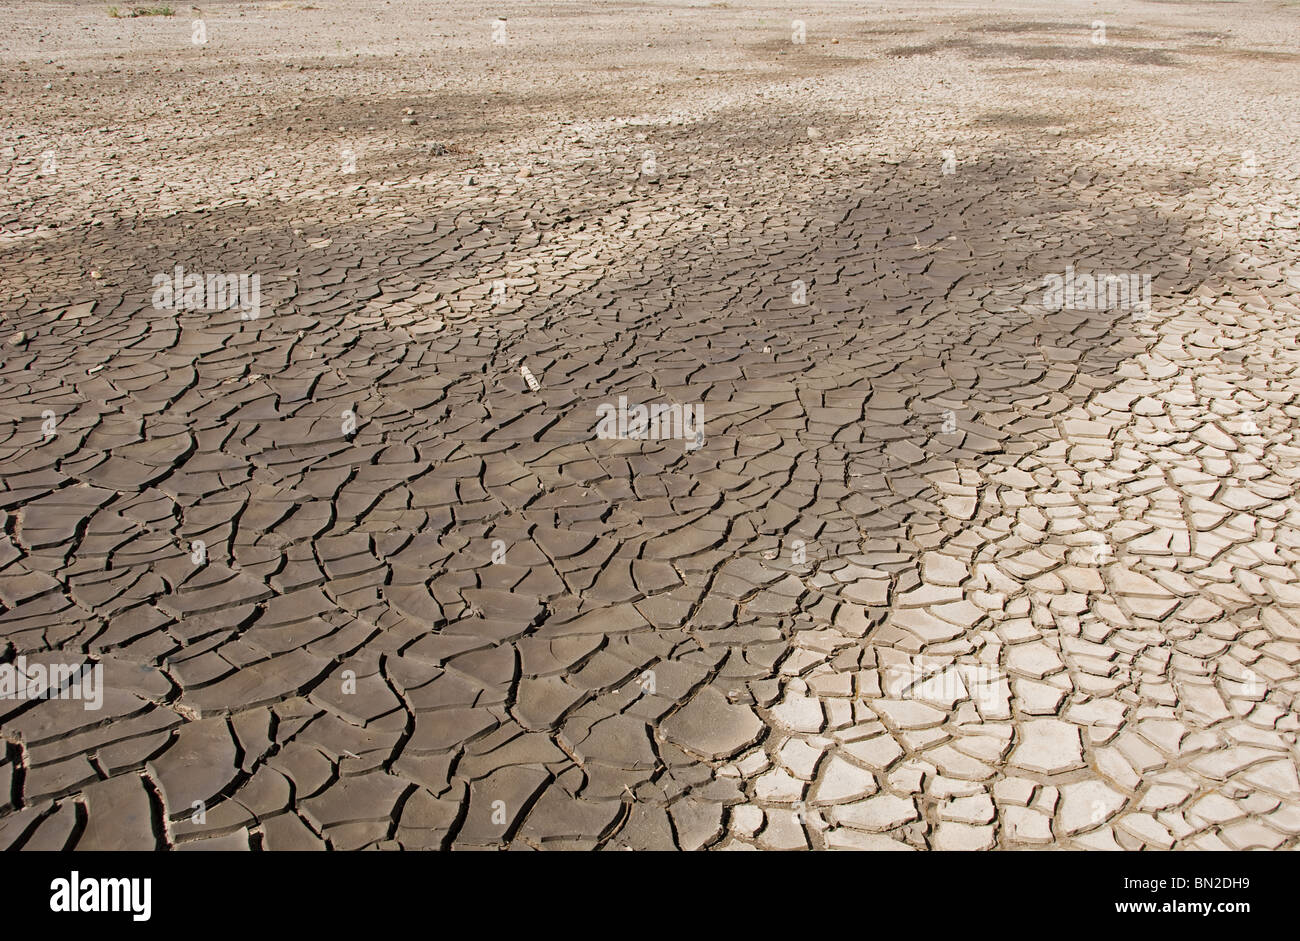 Cracking Up - unsere Auswirkungen auf die Umwelt durch die Verwendung von Wasser und durch den Klimawandel. Stockfoto